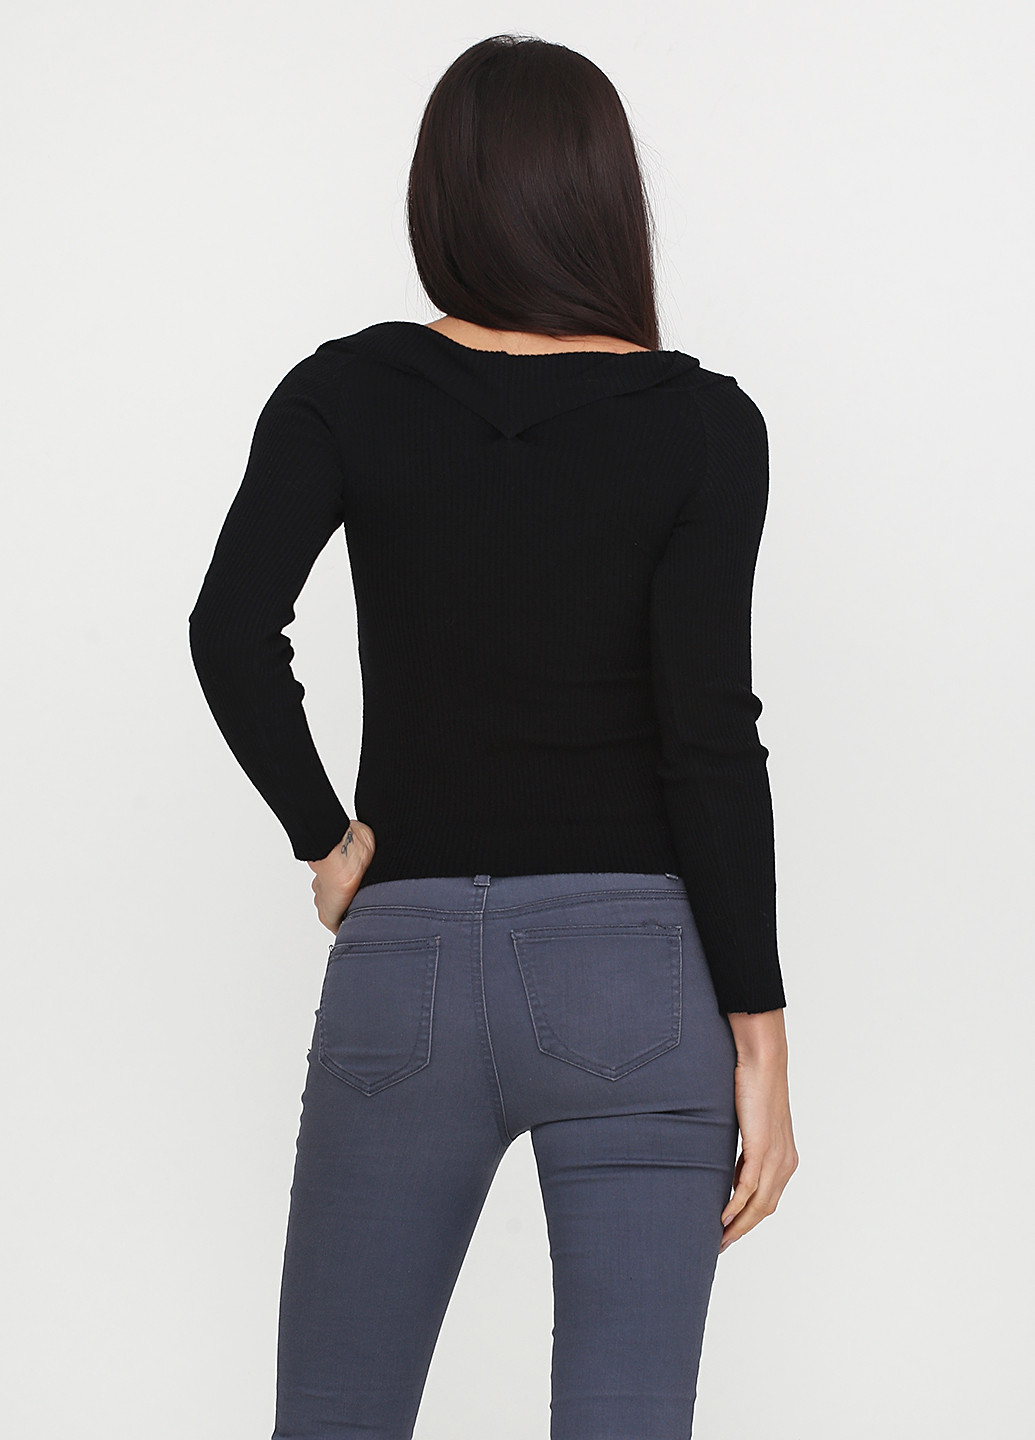 Черный демисезонный пуловер пуловер Rinascimento